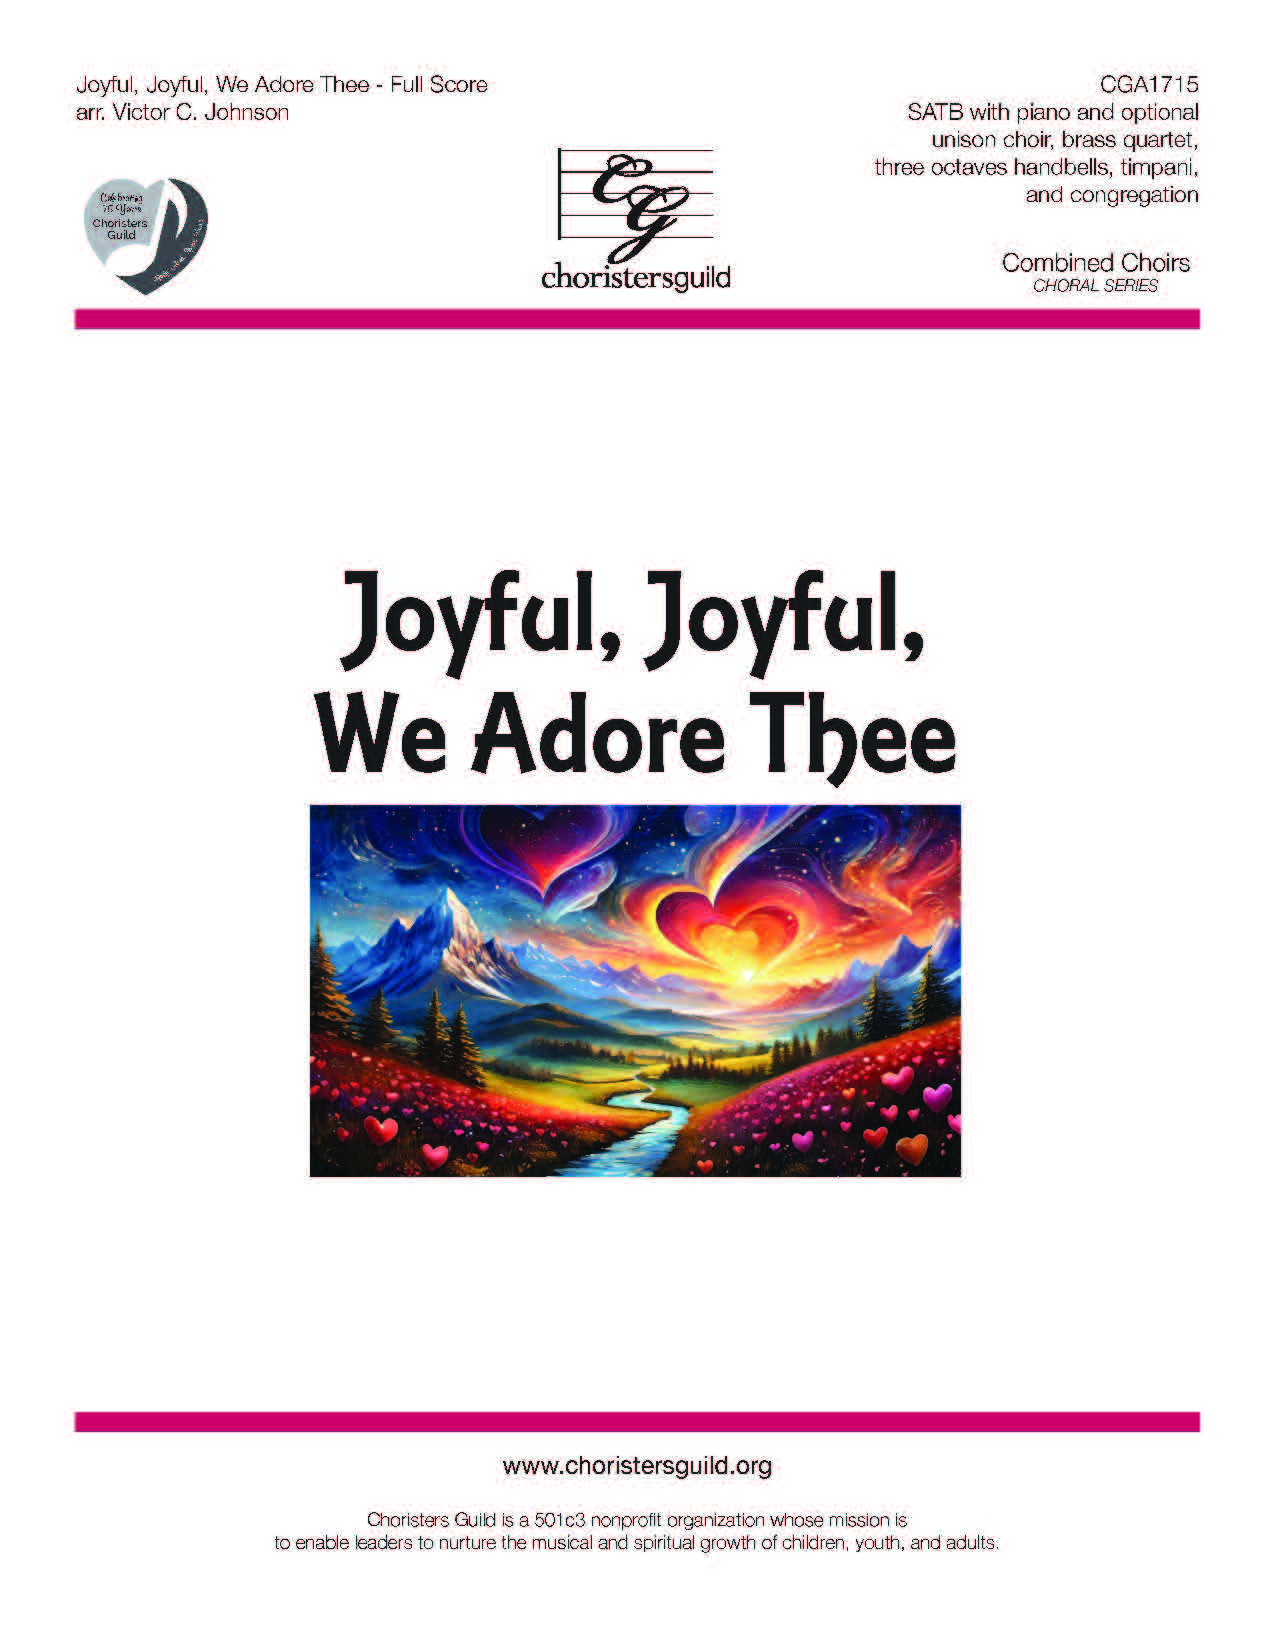 Joyful, Joyful, We Adore Thee (Full Score and Reproducible Parts) - SATB